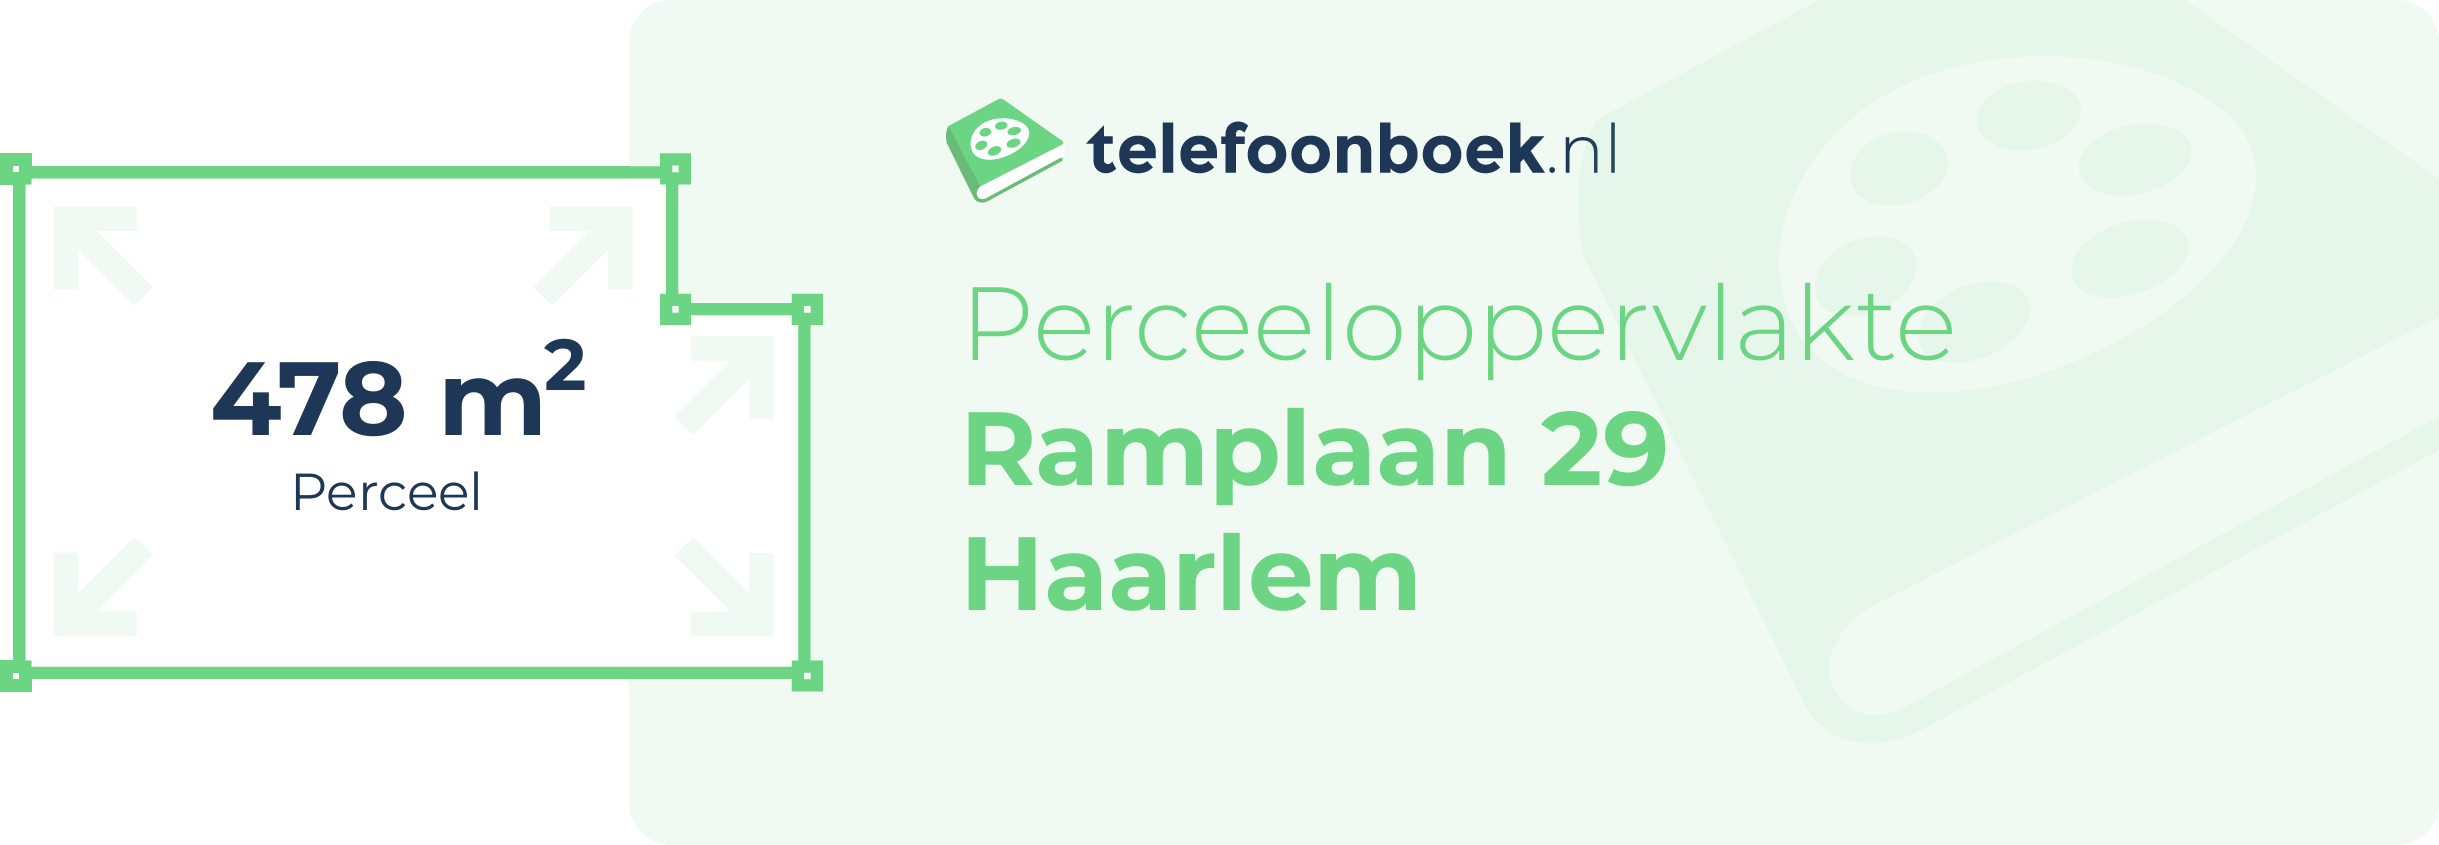 Perceeloppervlakte Ramplaan 29 Haarlem